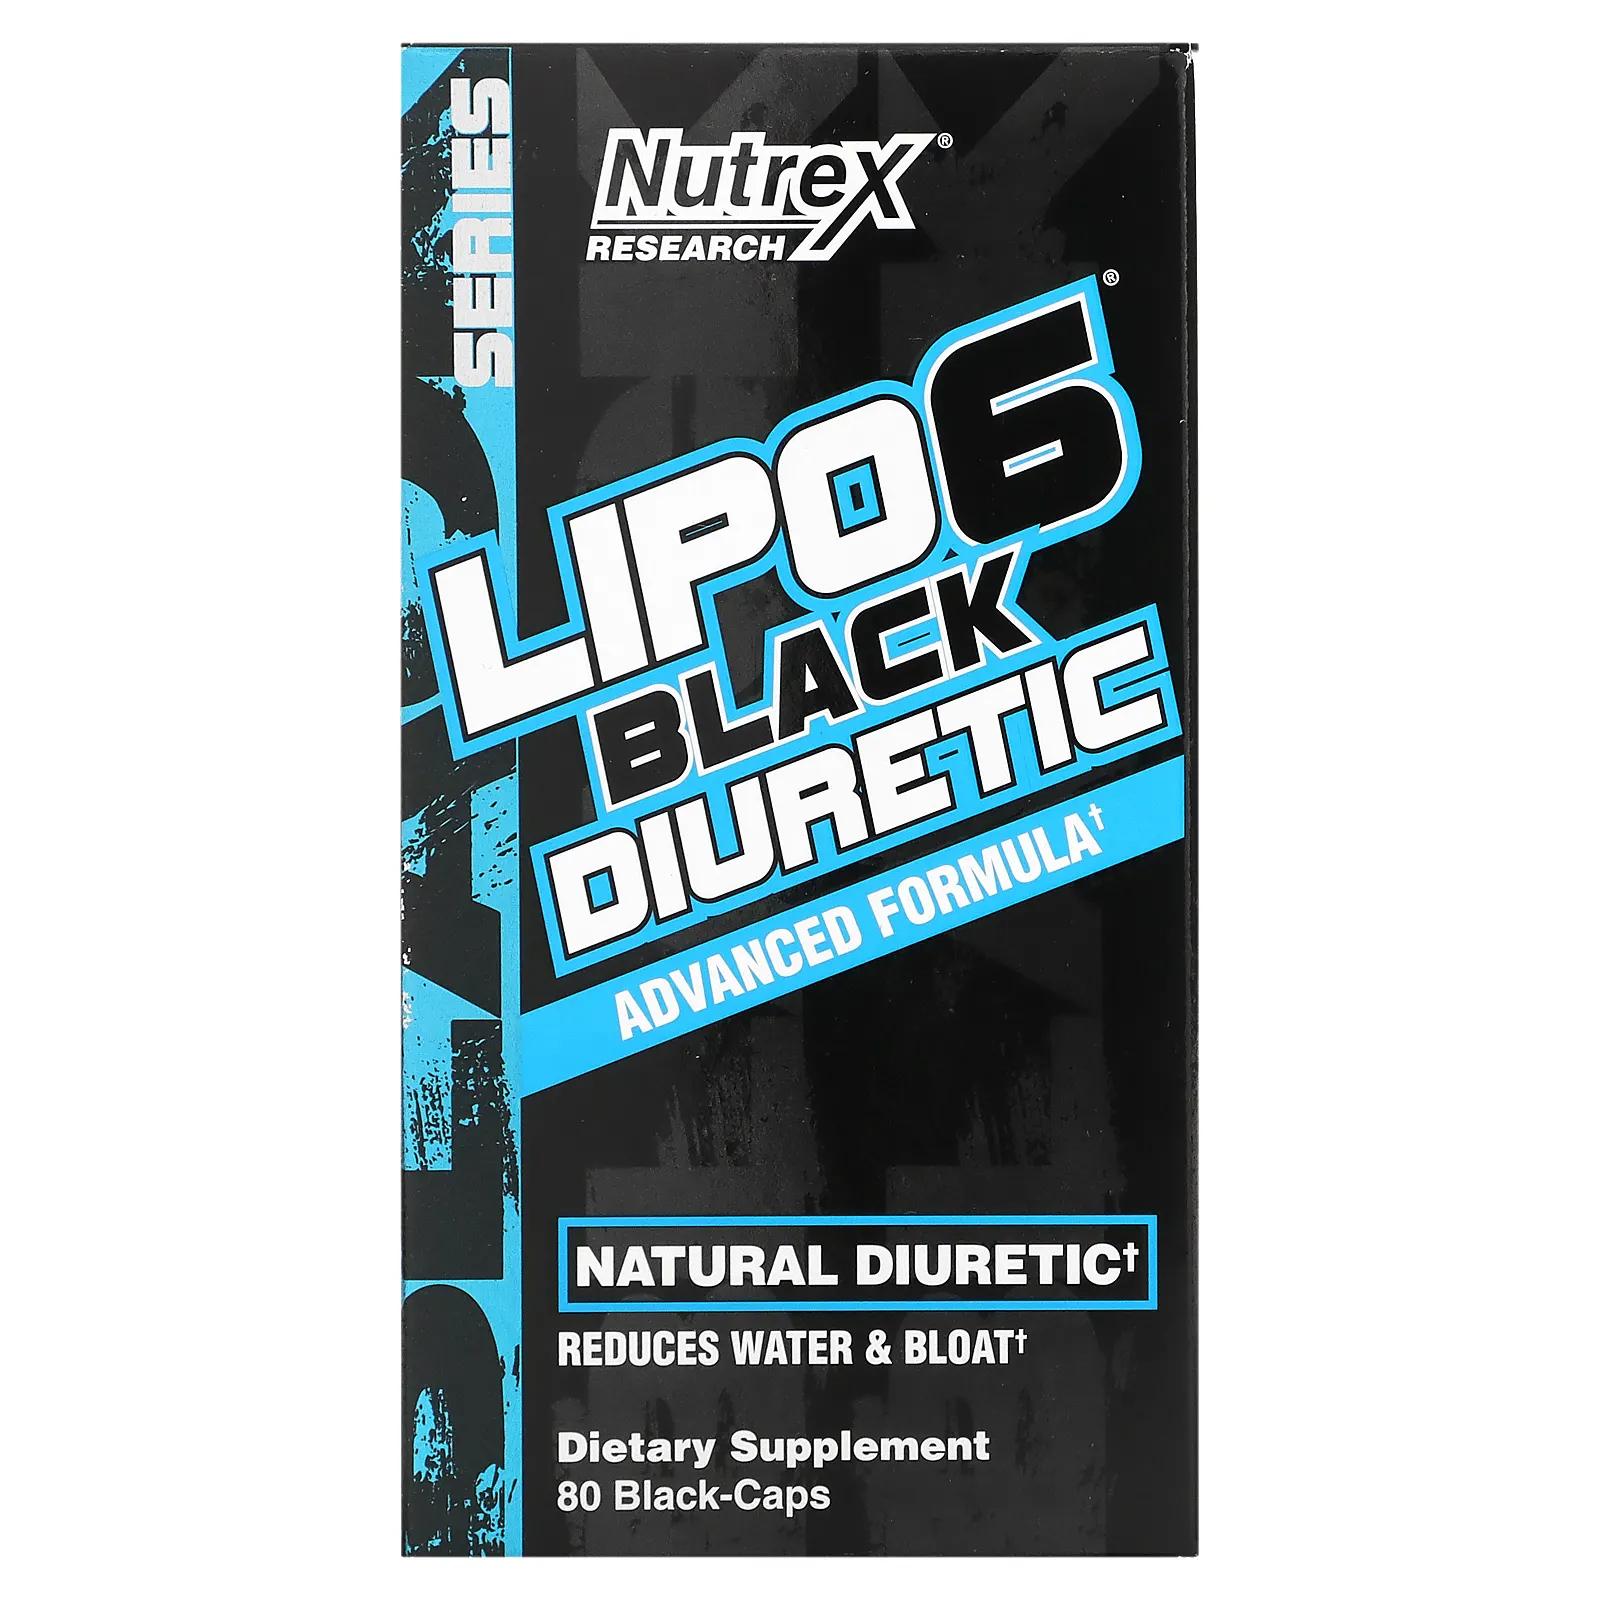 Nutrex Research LIPO-6 Black Diuretic 80 Black-Caps цена и фото